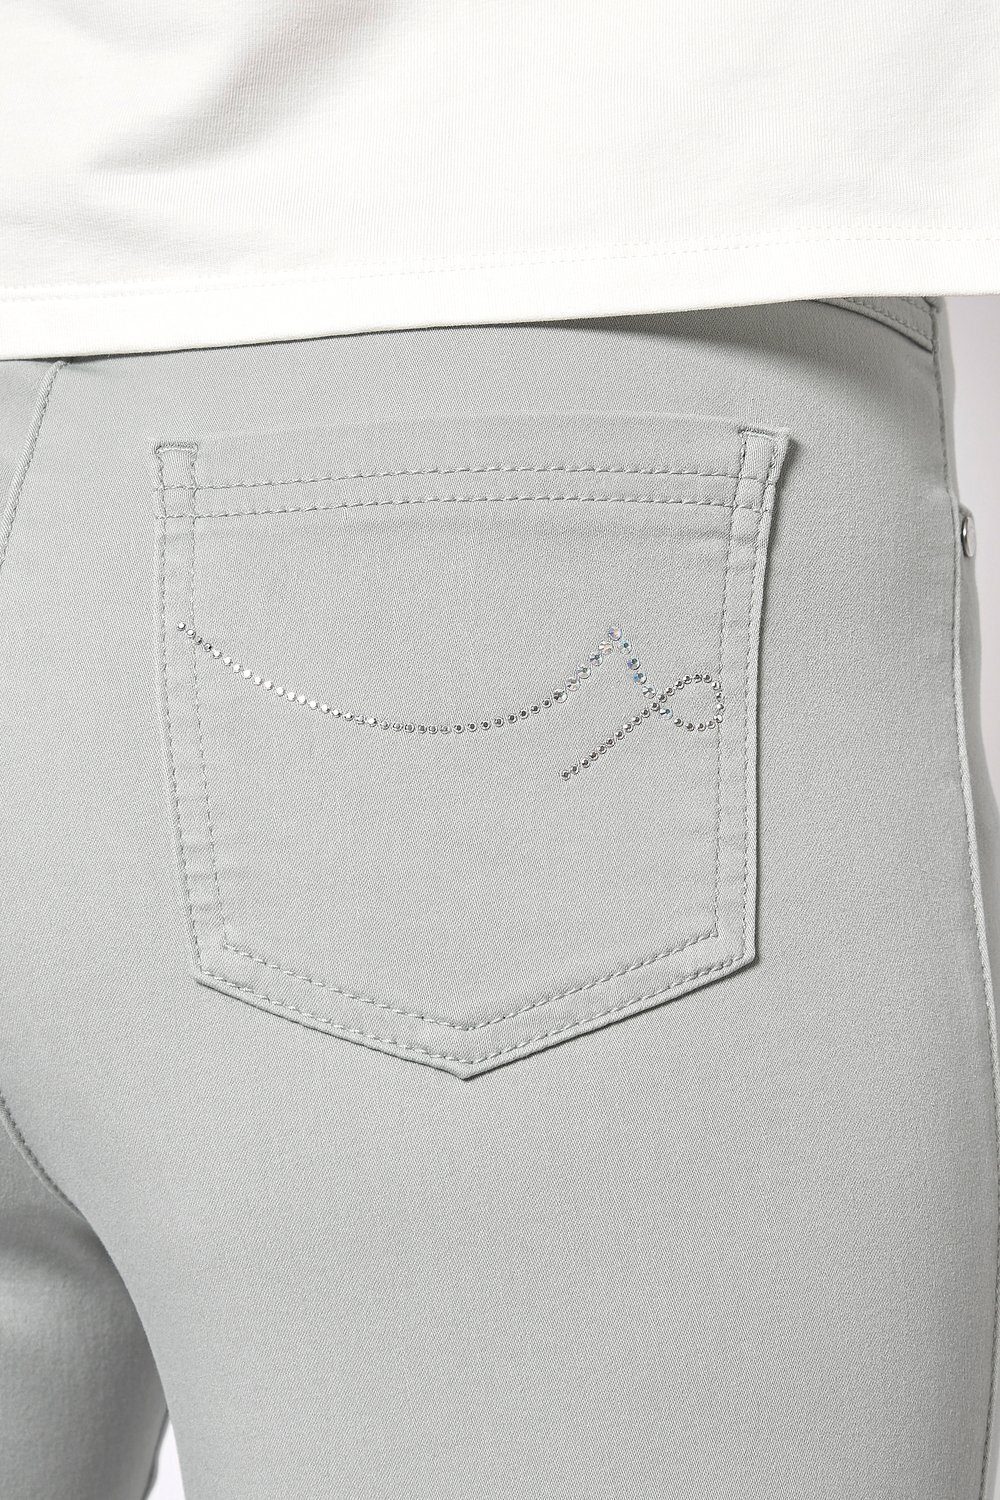 Passform TONI - beste 5-Pocket-Hose in by Freundin Meine 082 schmaler Relaxed silberfarben